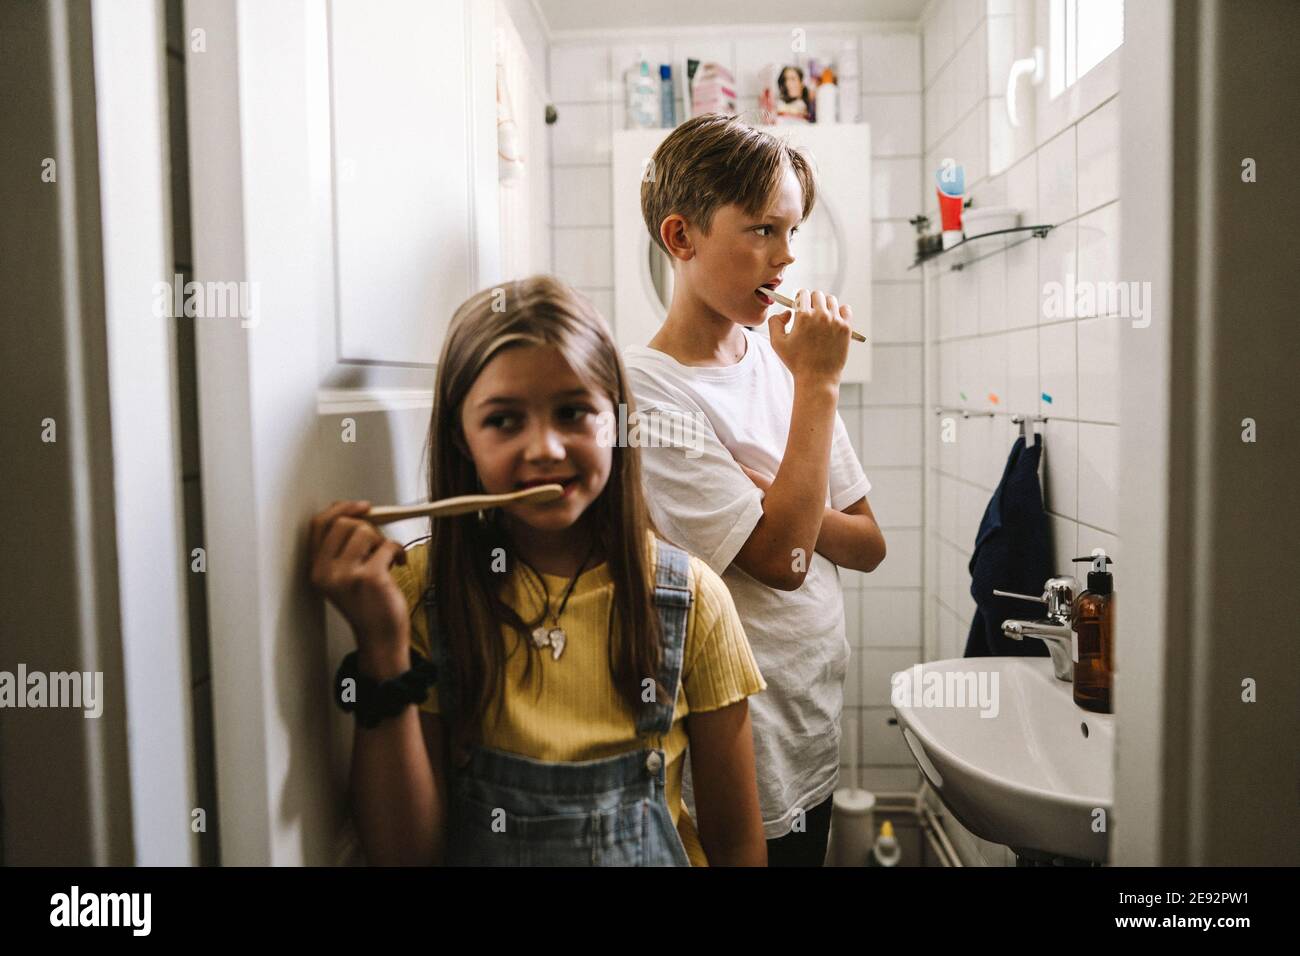 Le frère et la sœur se brossent les dents dans la salle de bains Banque D'Images